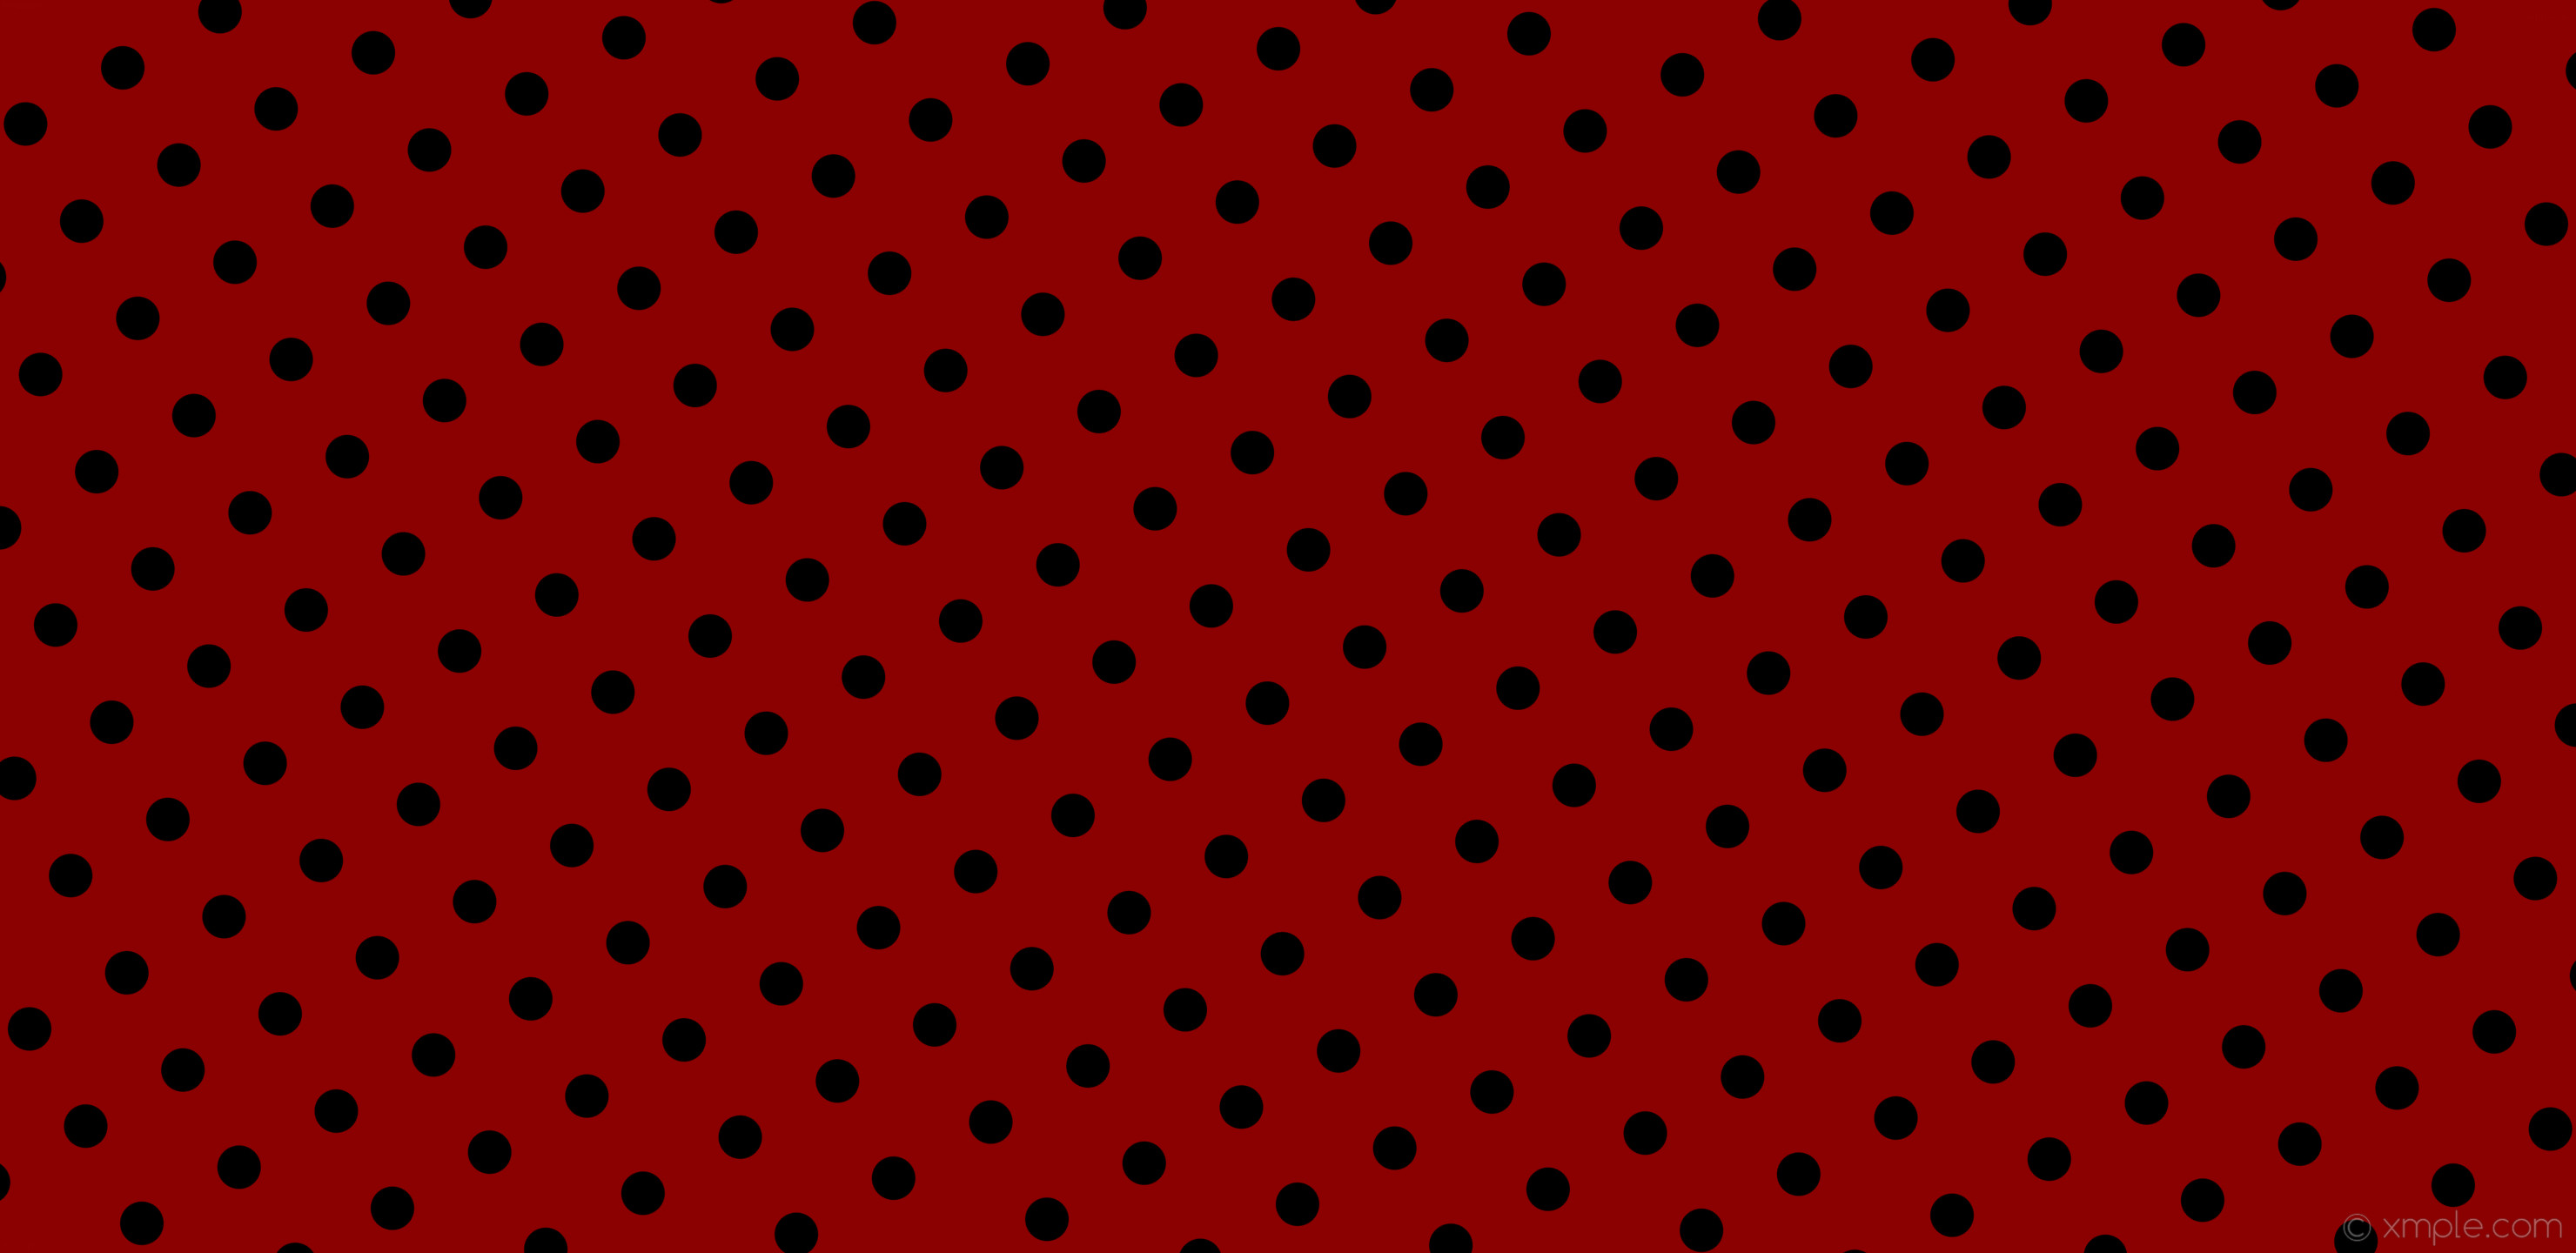 2960x1440 wallpaper red polka dots black spots dark red #8b0000 #000000 210Â° 50px  129px